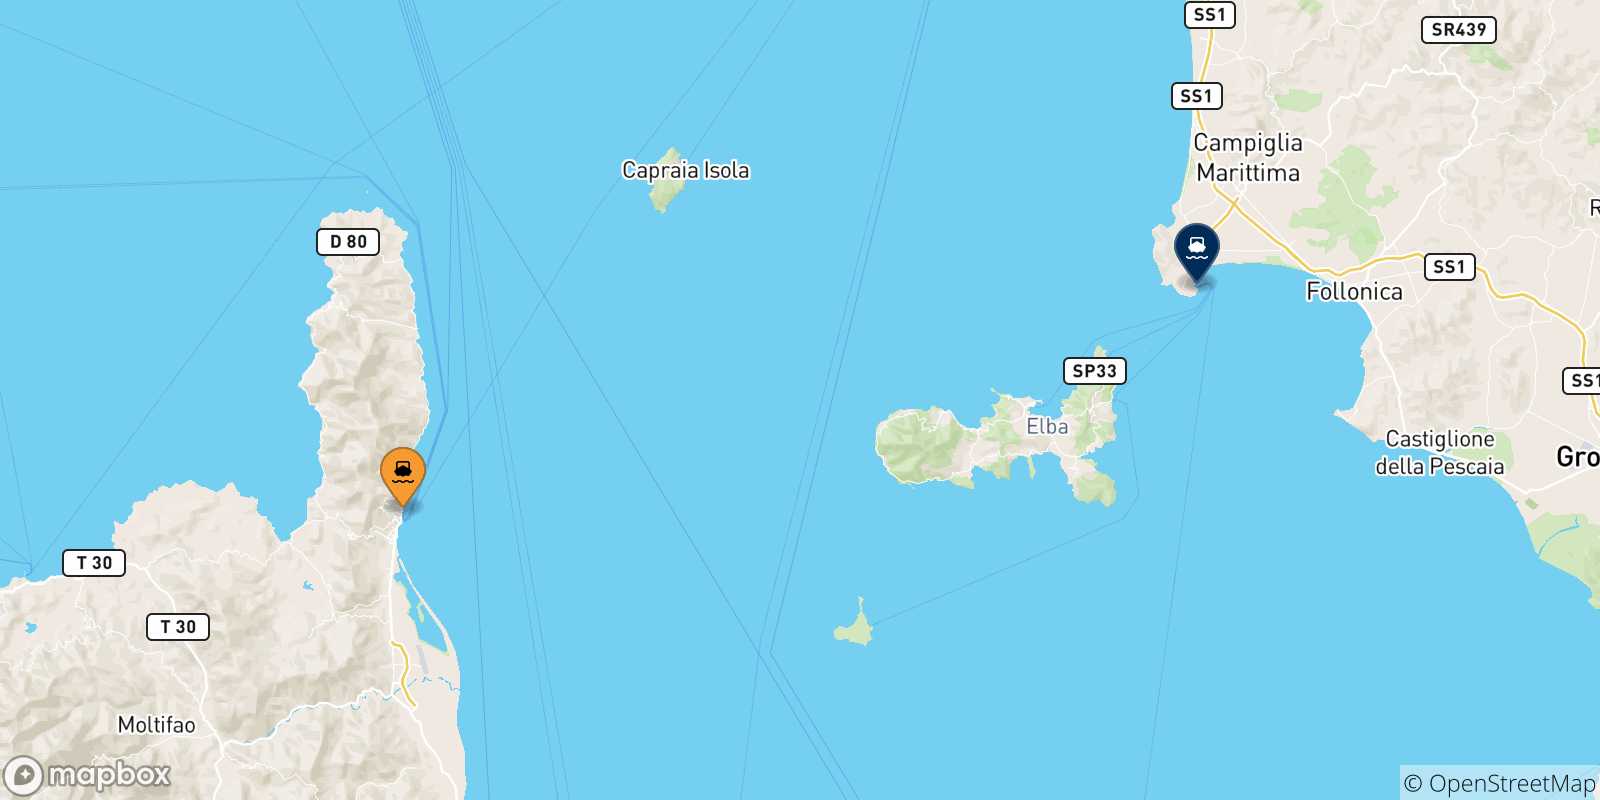 Mappa delle possibili rotte tra la Corsica e Piombino